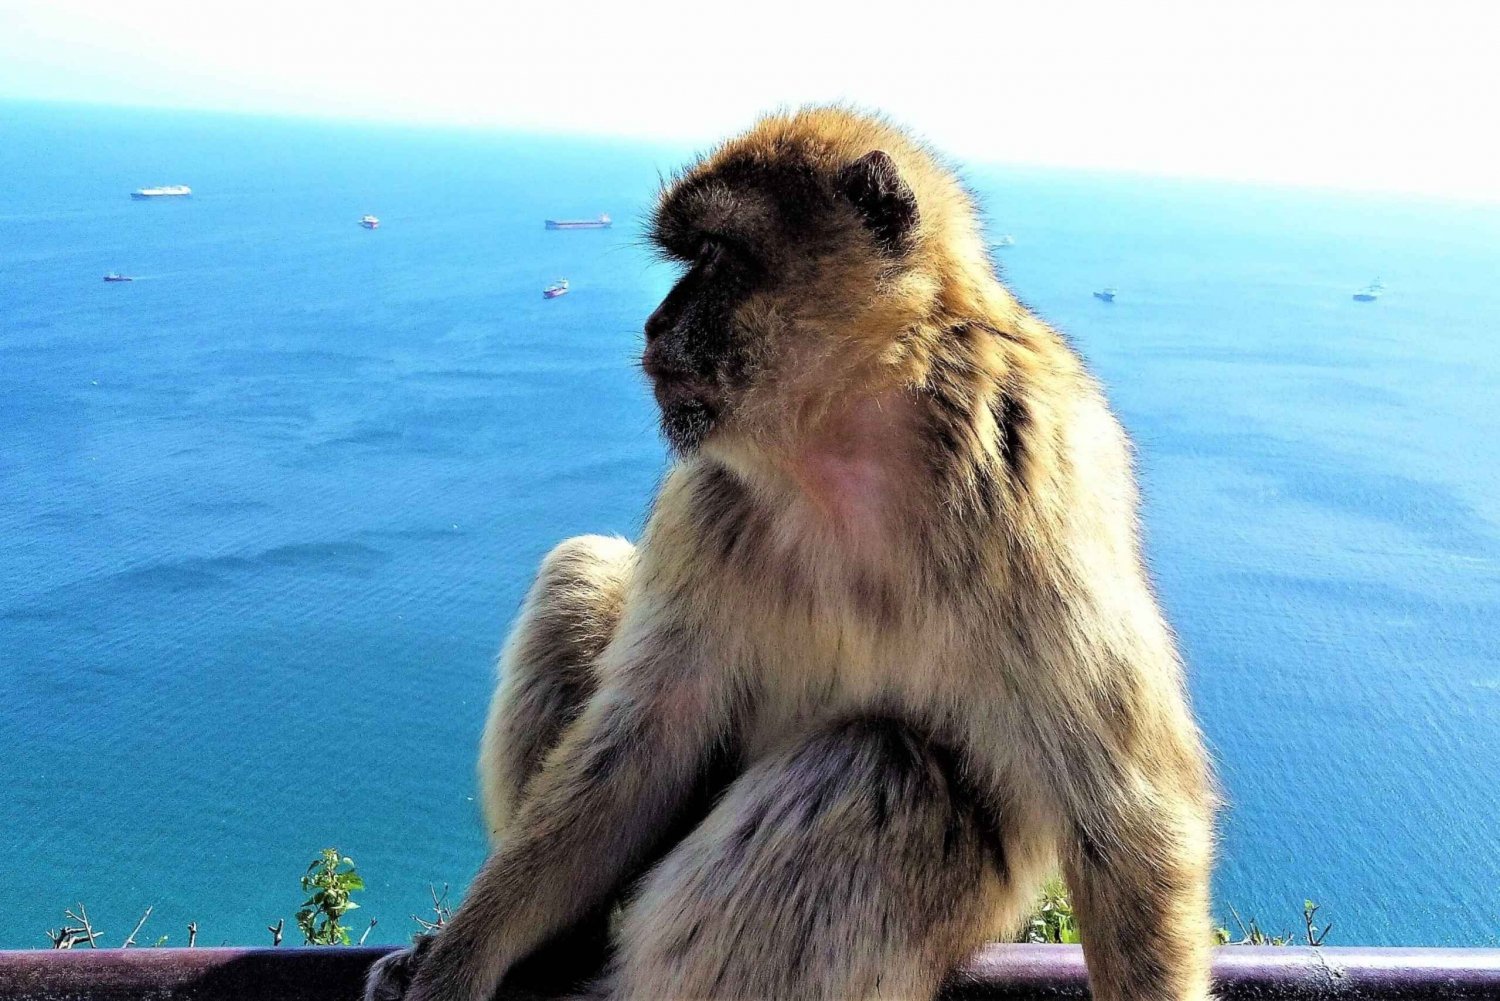 Desde Málaga o Marbella: Excursión Privada a Gibraltar